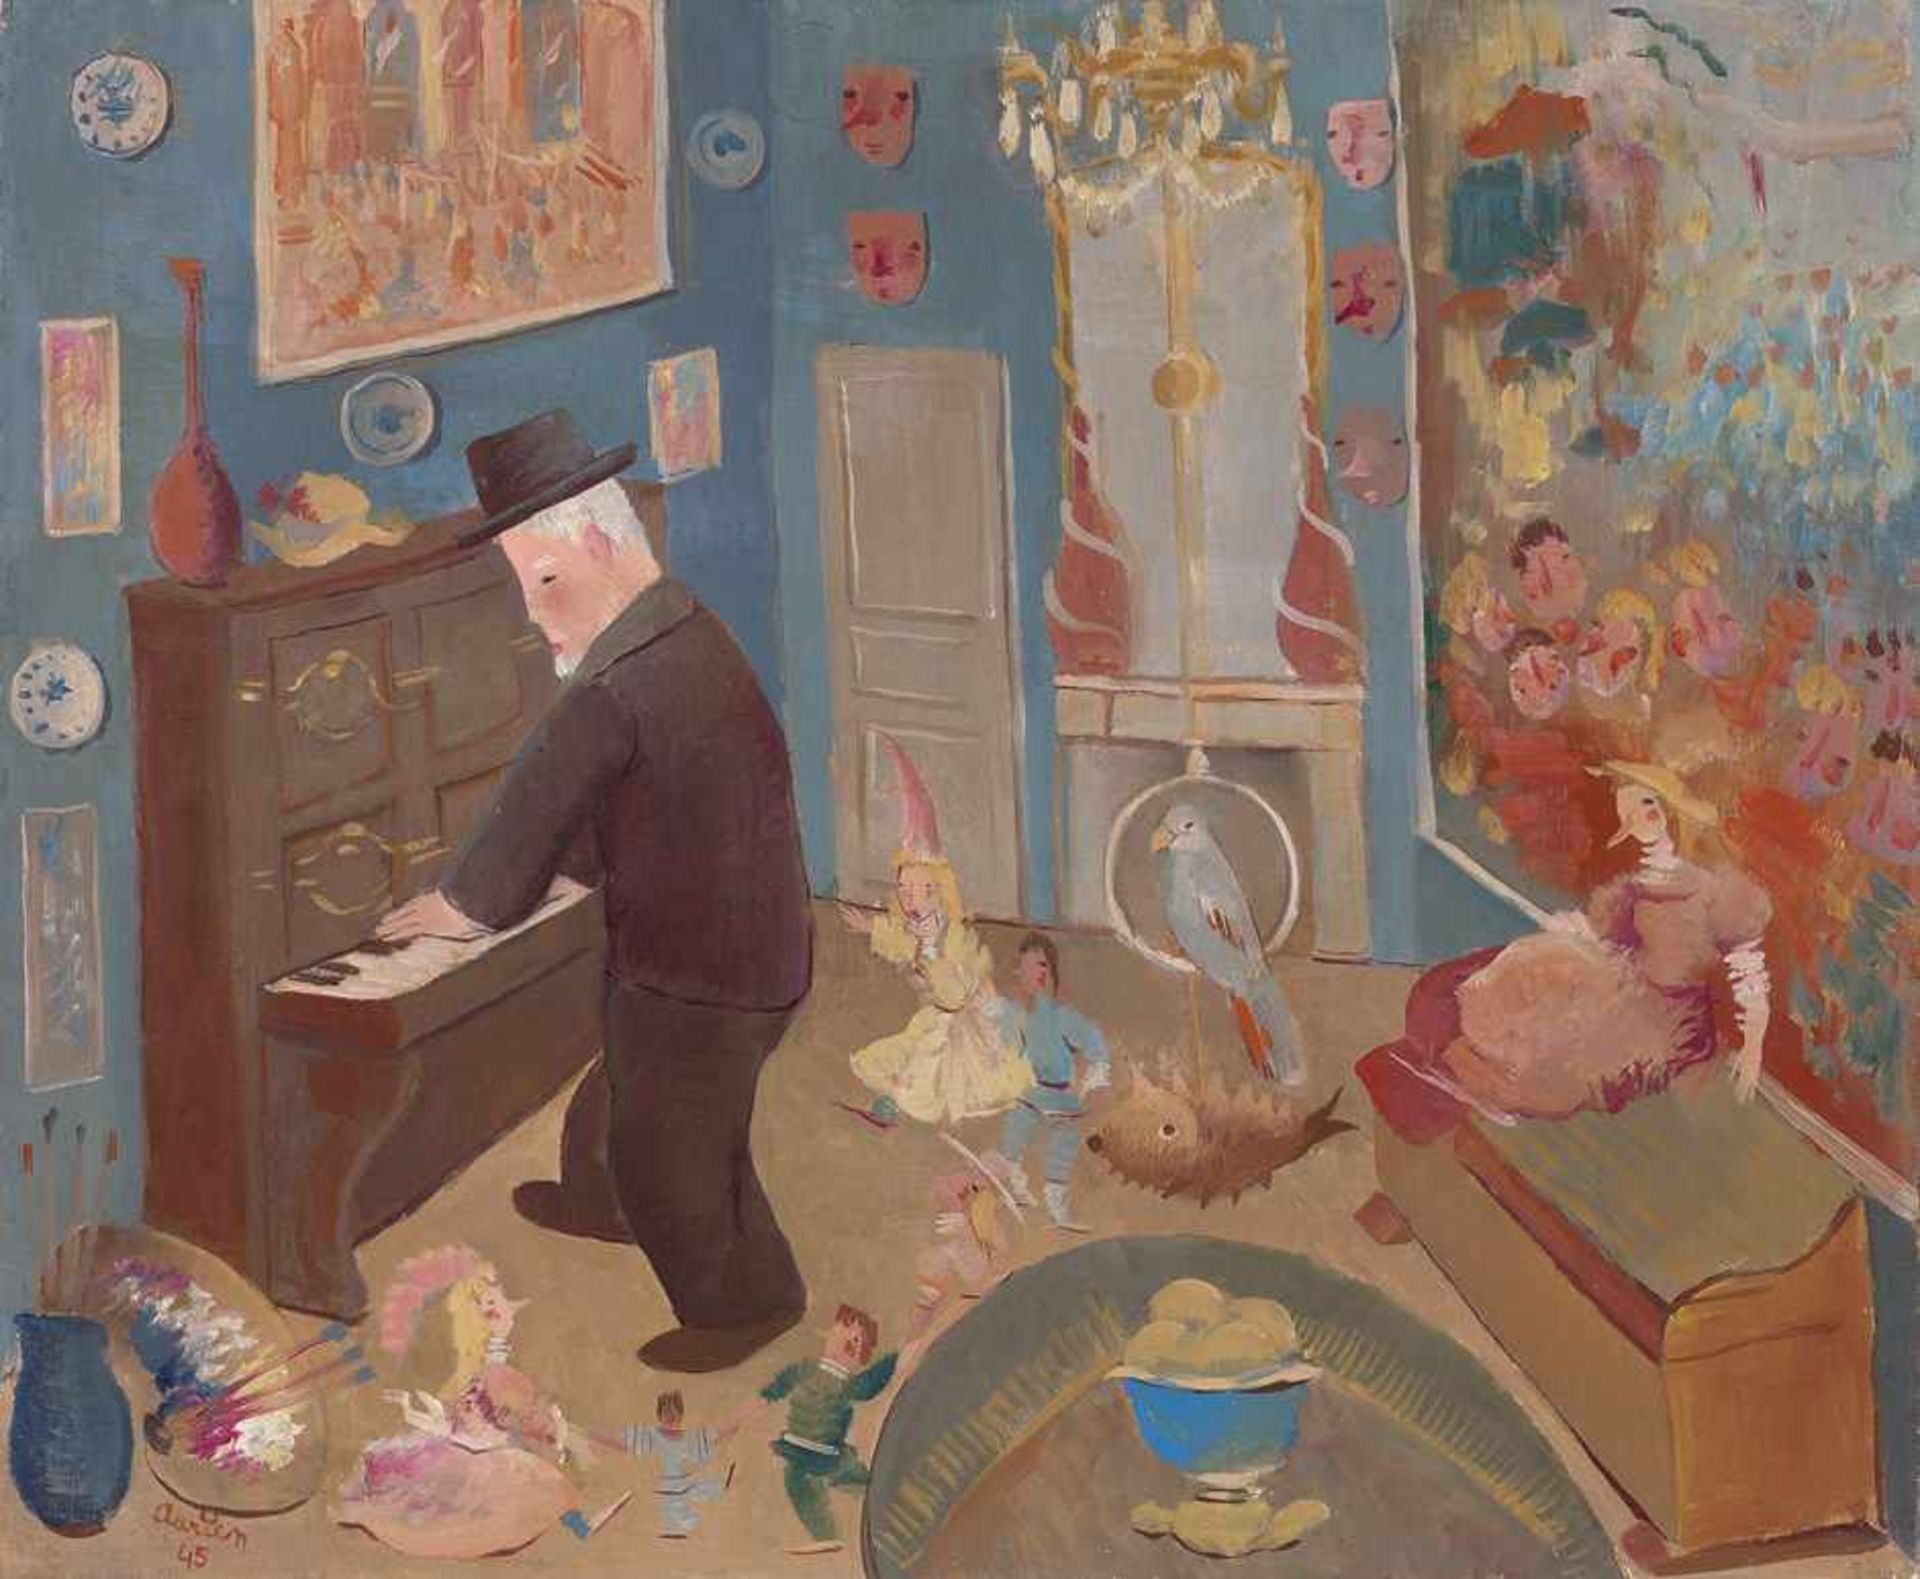 Adrien: Im KinderzimmerIm KinderzimmerÖl auf Leinwand. 1945.50 x 60 cm.Unten links mit Pinsel in Rot